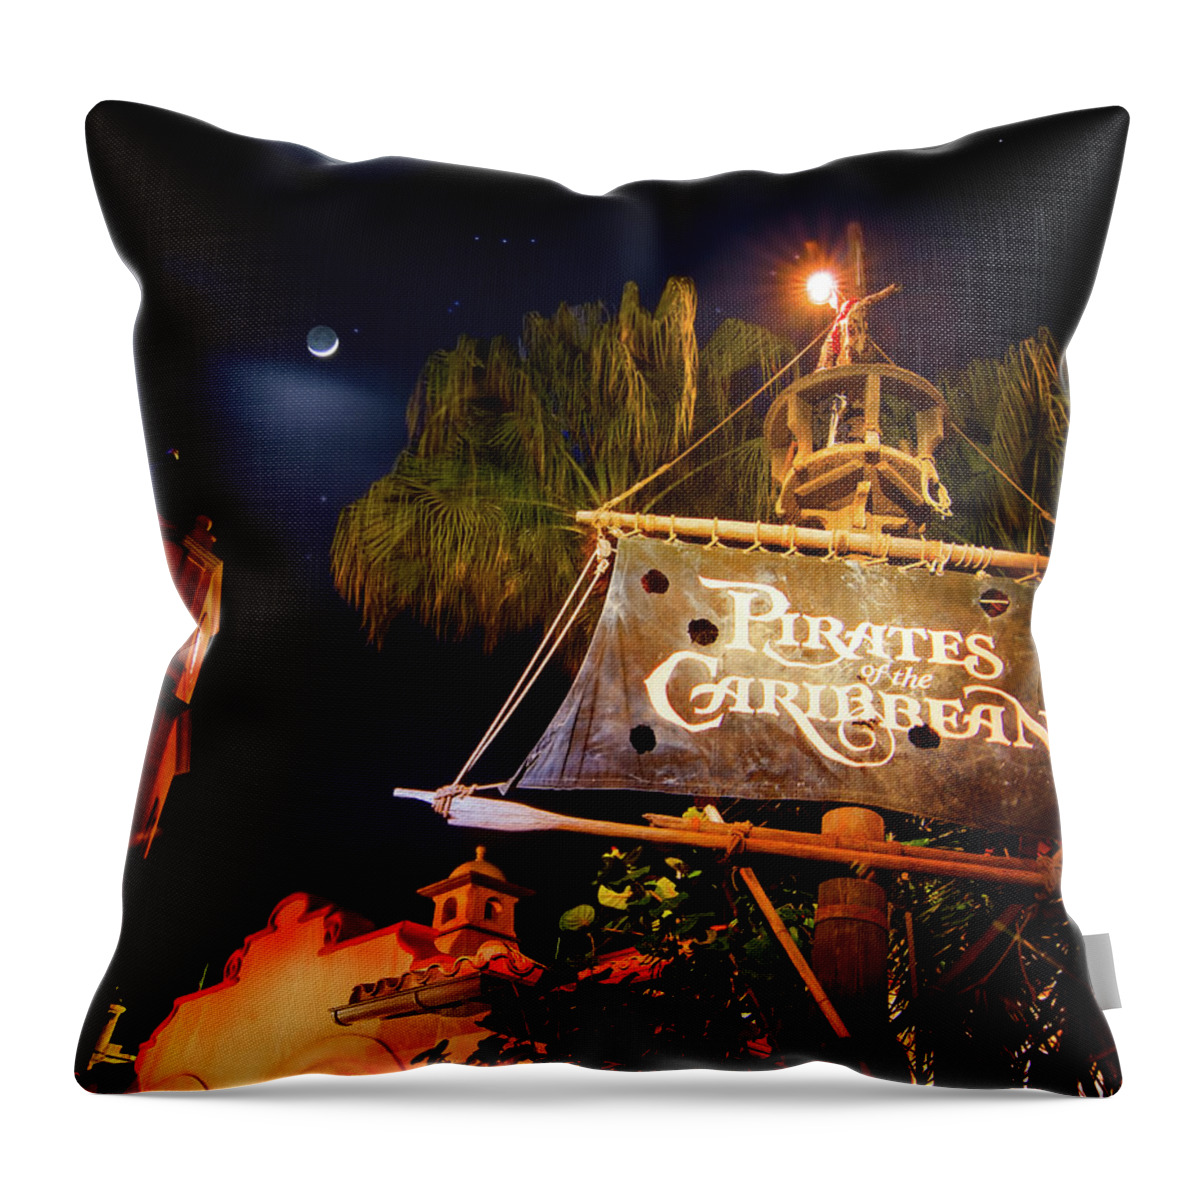 Pirates Of The Caribbean Throw Pillow featuring the photograph Pirates of the Caribbean by Mark Andrew Thomas